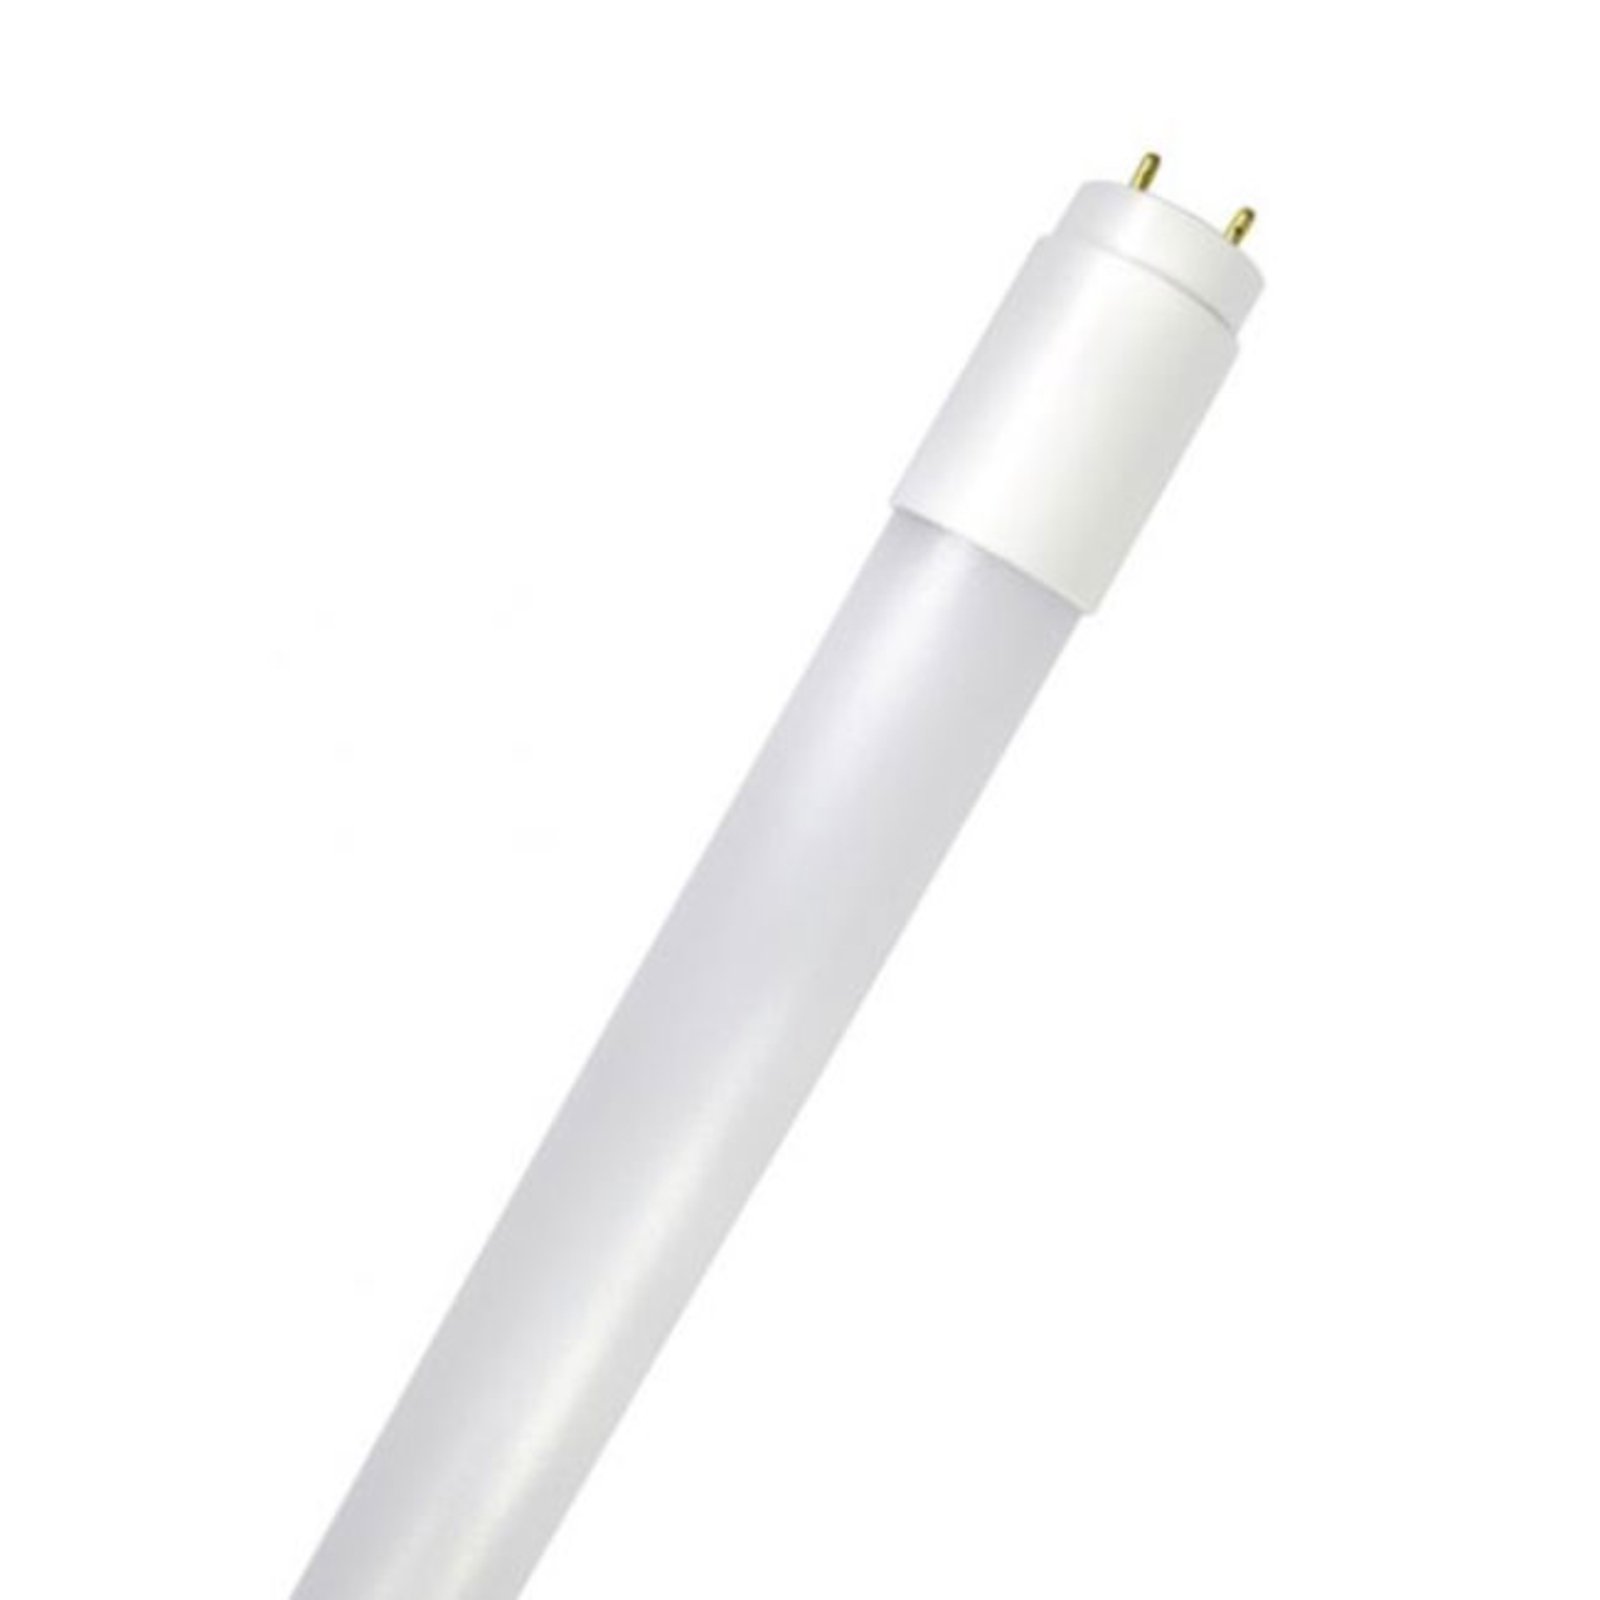 LED tube bulb GoLeaf T8 G13 full spectrum 16W 120cm